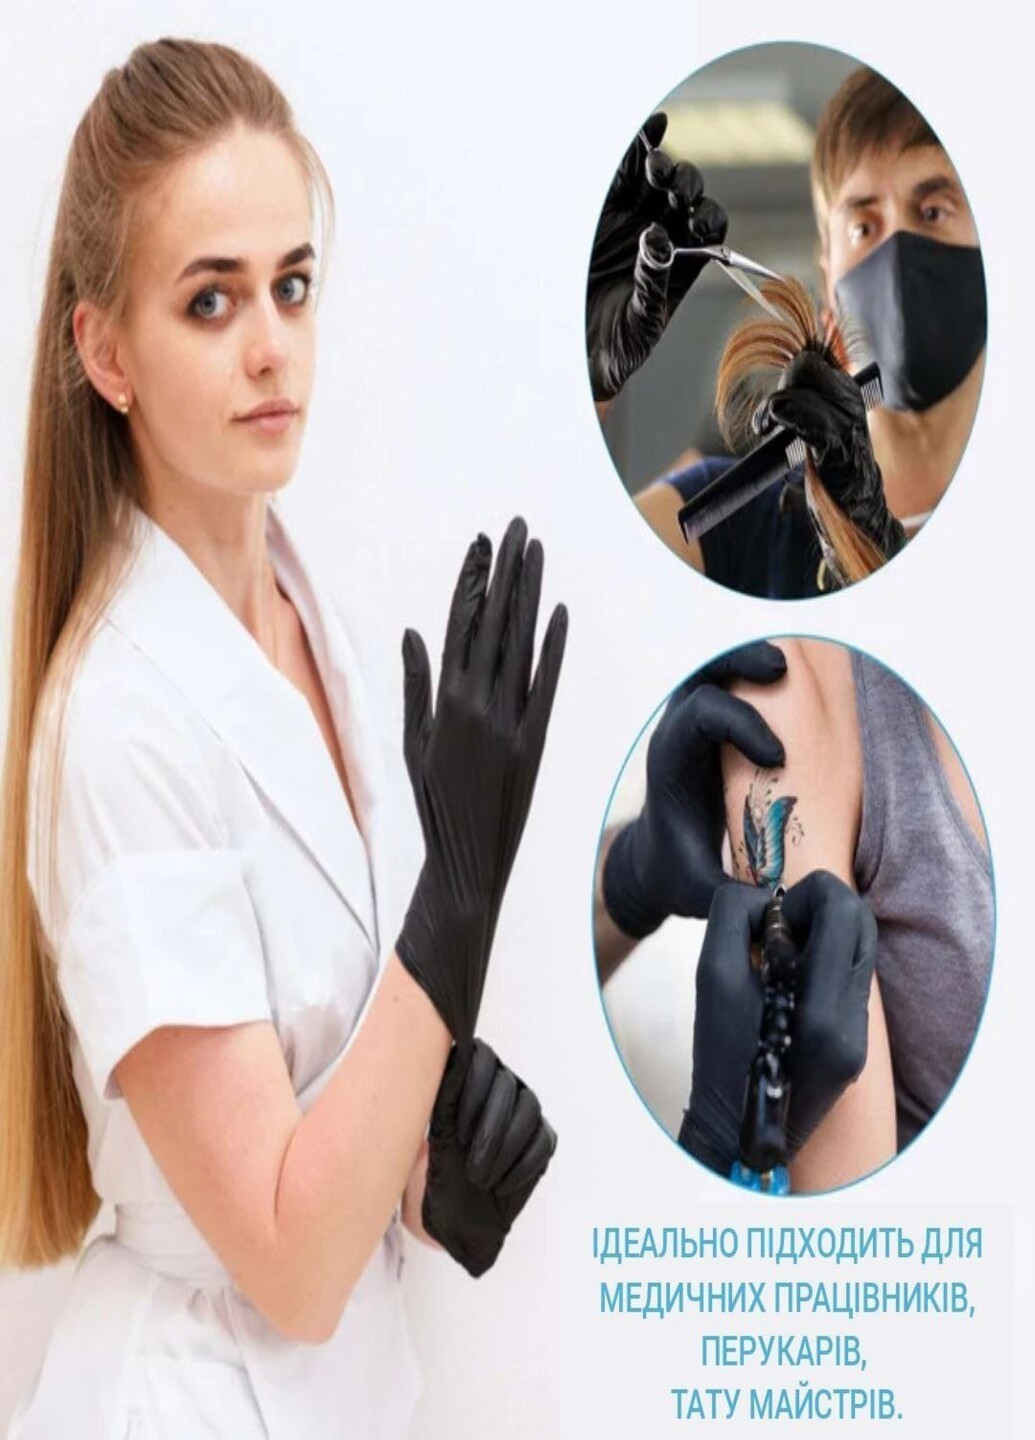 Нітрилові рукавиці SafeTouch® Black без пудри текстуровані розмір L 100 шт. Чорні (3.3 г) Medicom (254916667)